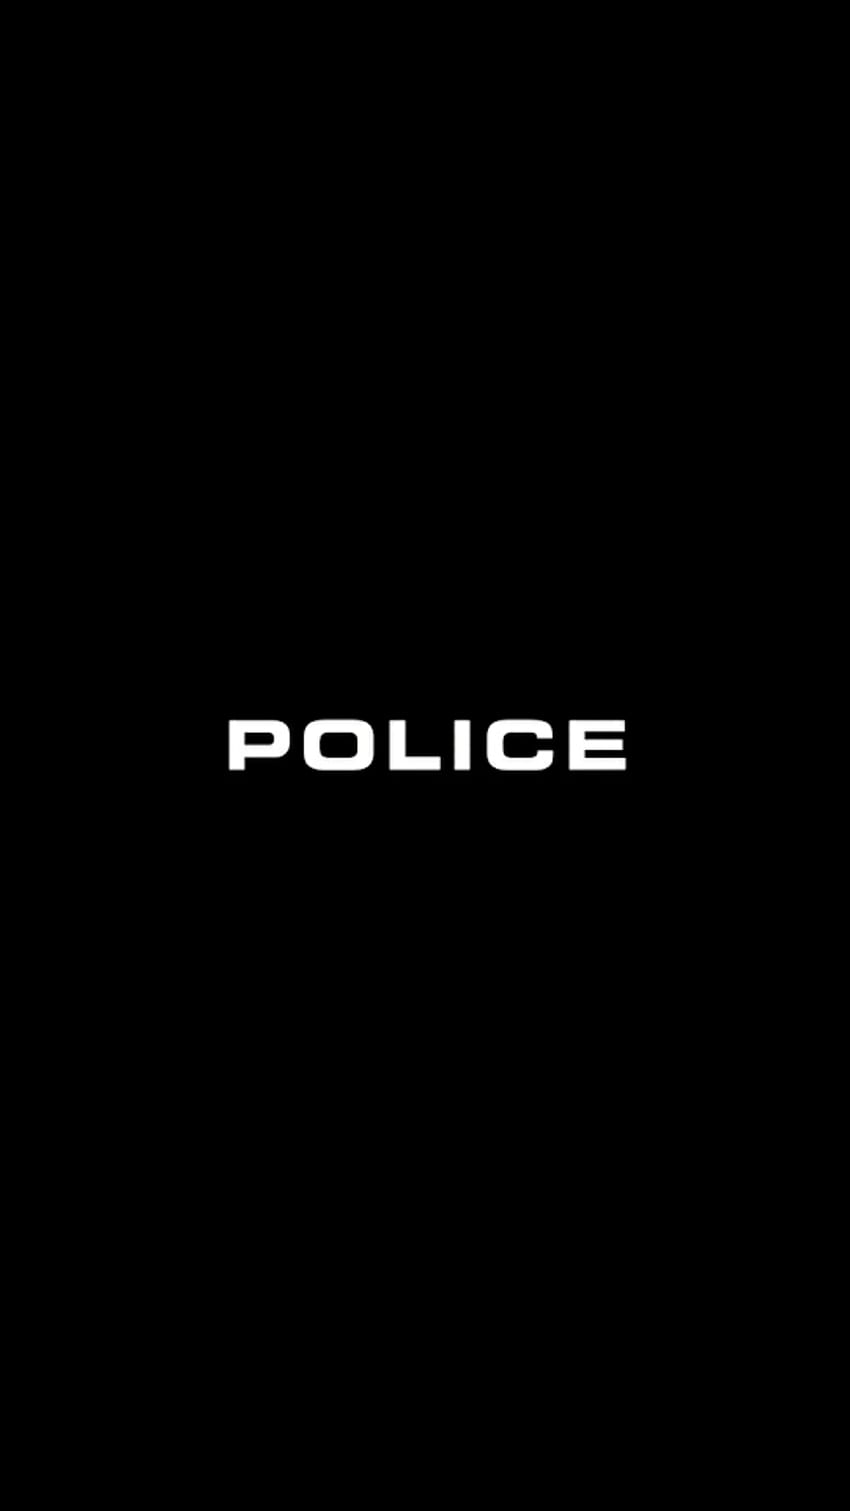 POLICE logo HD wallpaper  Peakpx